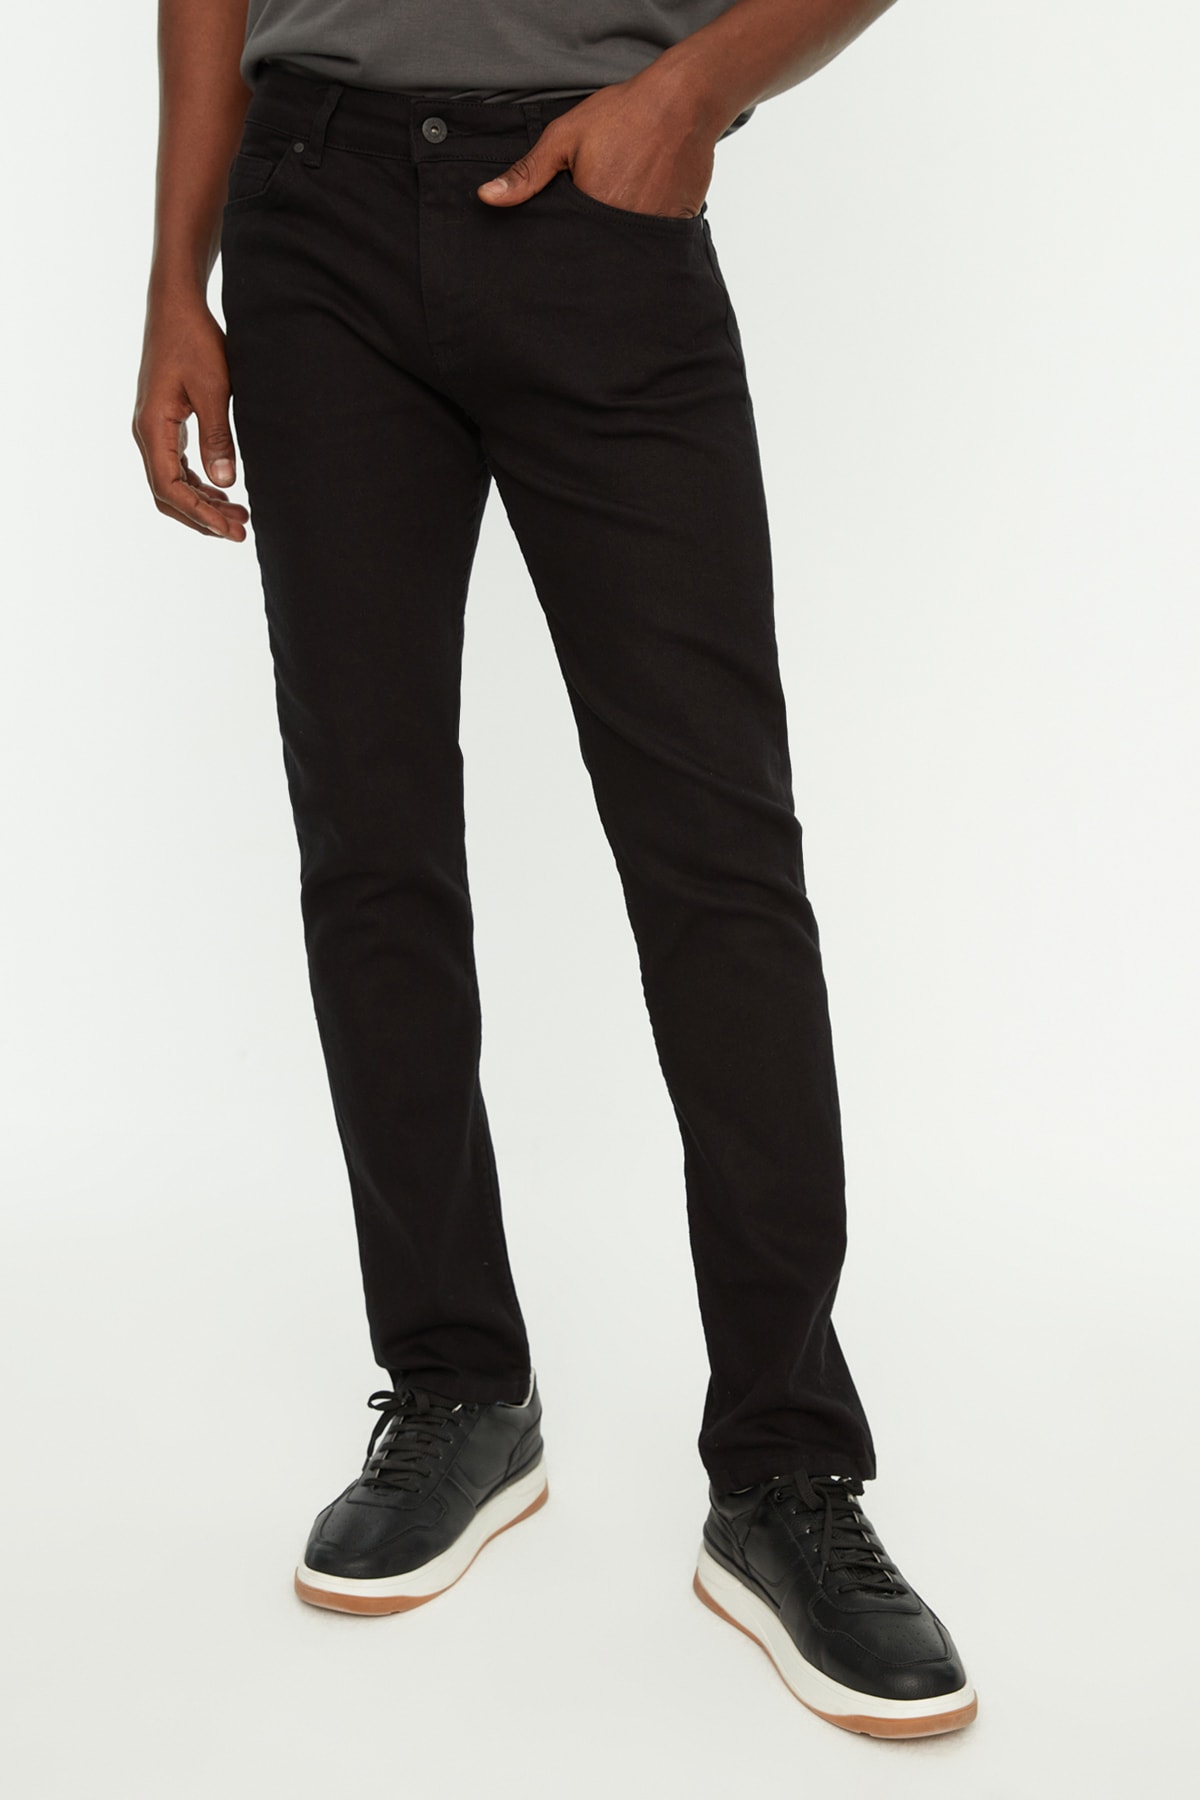 Джинсы Trendyol скинни из нелиняющего материала, черный джинсы скинни o stin размер 48 черный